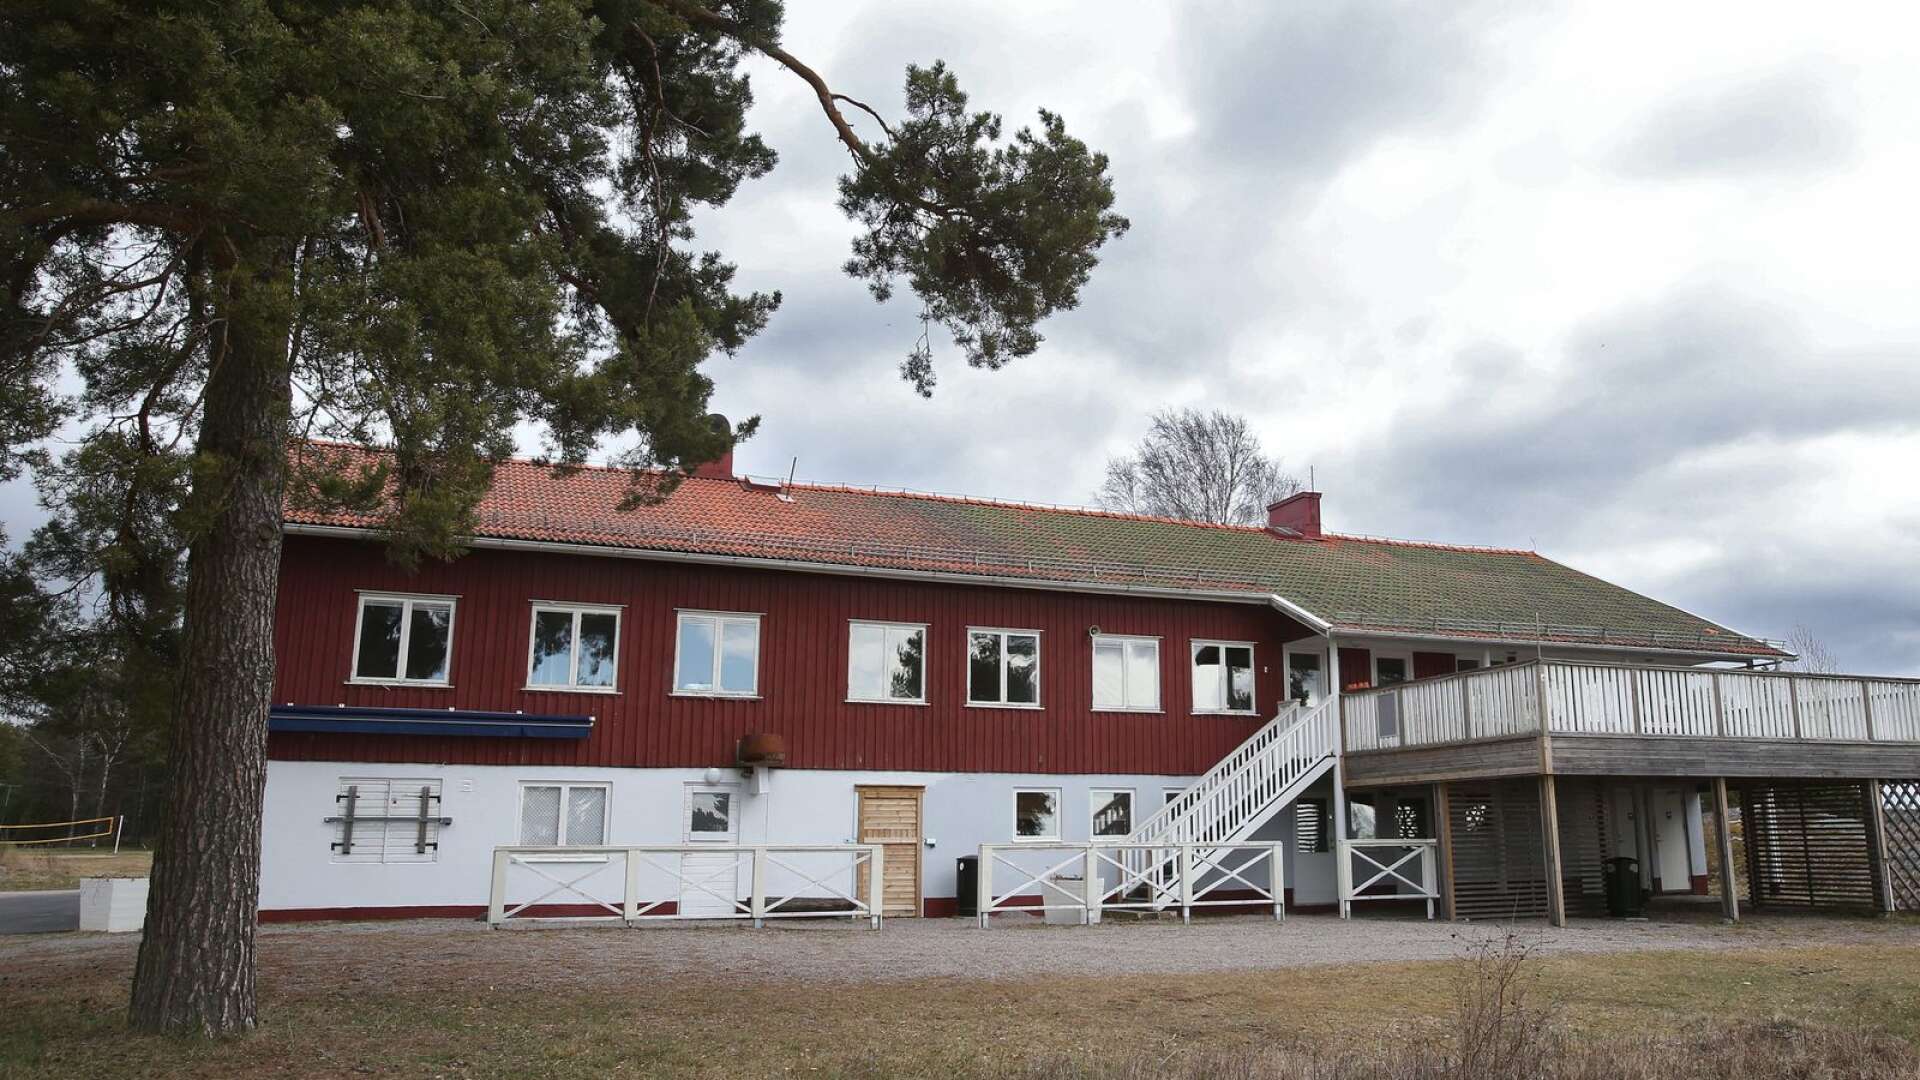 Skutbergets Wenner ser mycket potential i Skutbergsgården som en restaurang med musikscen och skulle gärna vilja köpa byggnaden. Men Karlstads kommun säger nej.